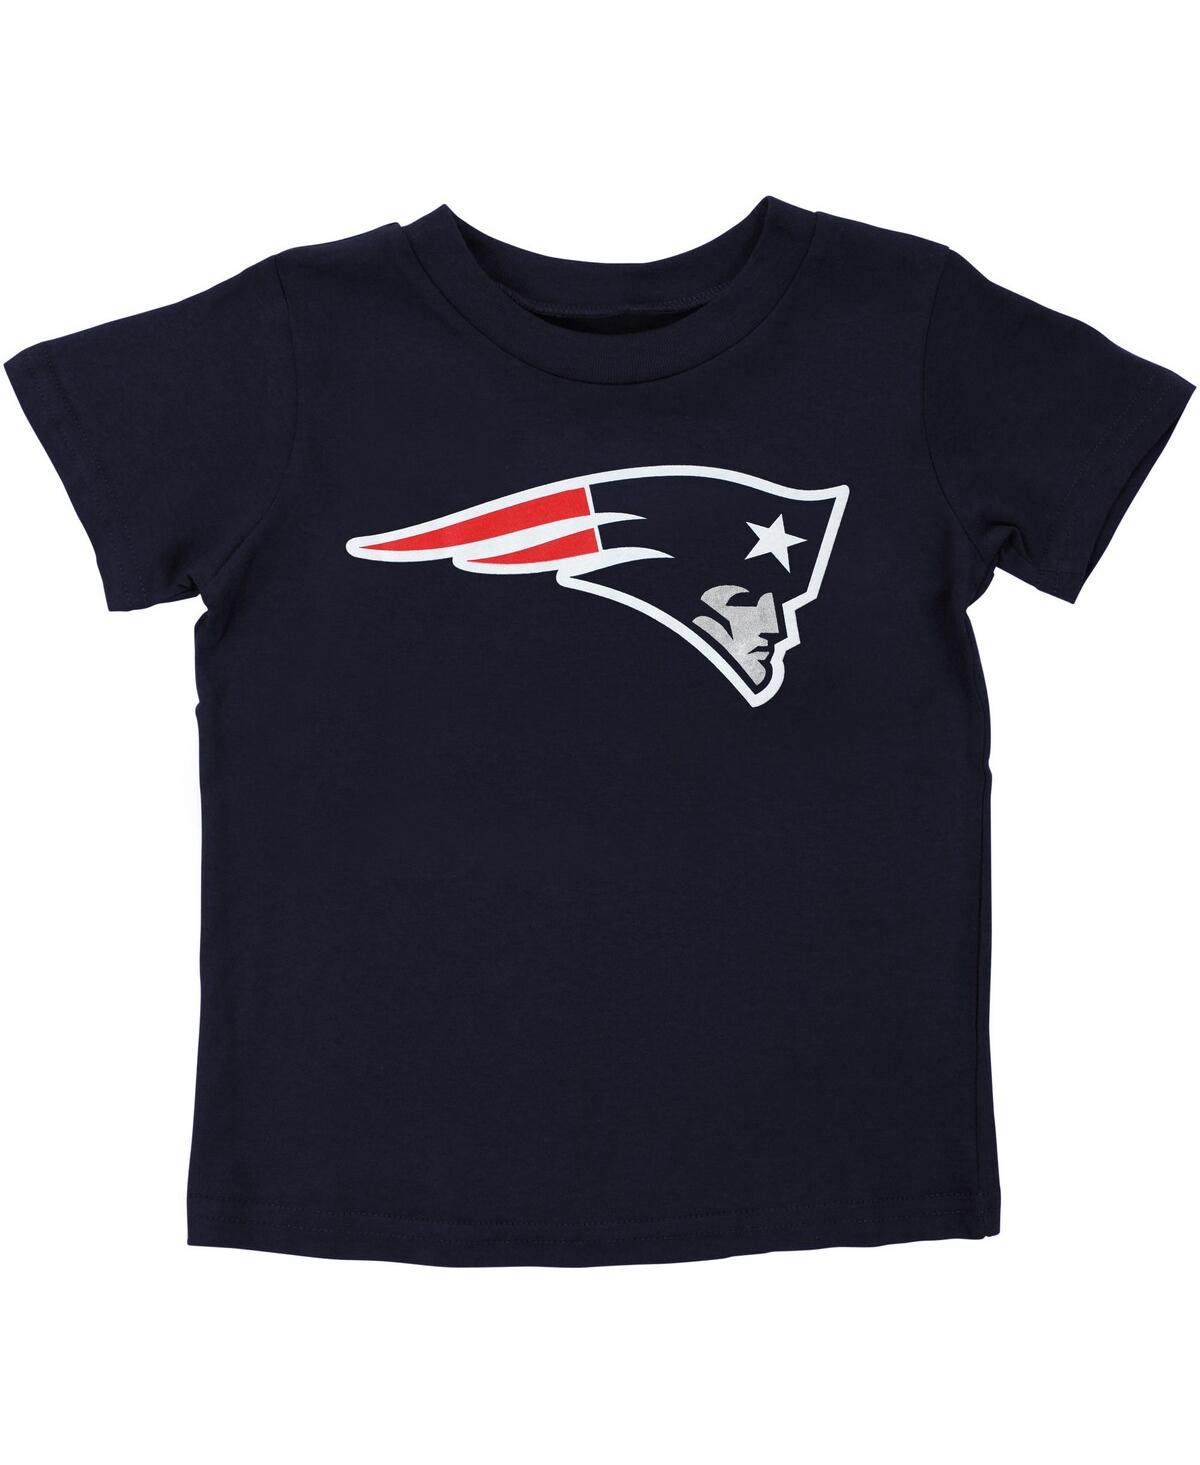 Outerstuff Babies' Preschool Boys And Girls New England Patriots Team Logo Navy Blue T-shirt